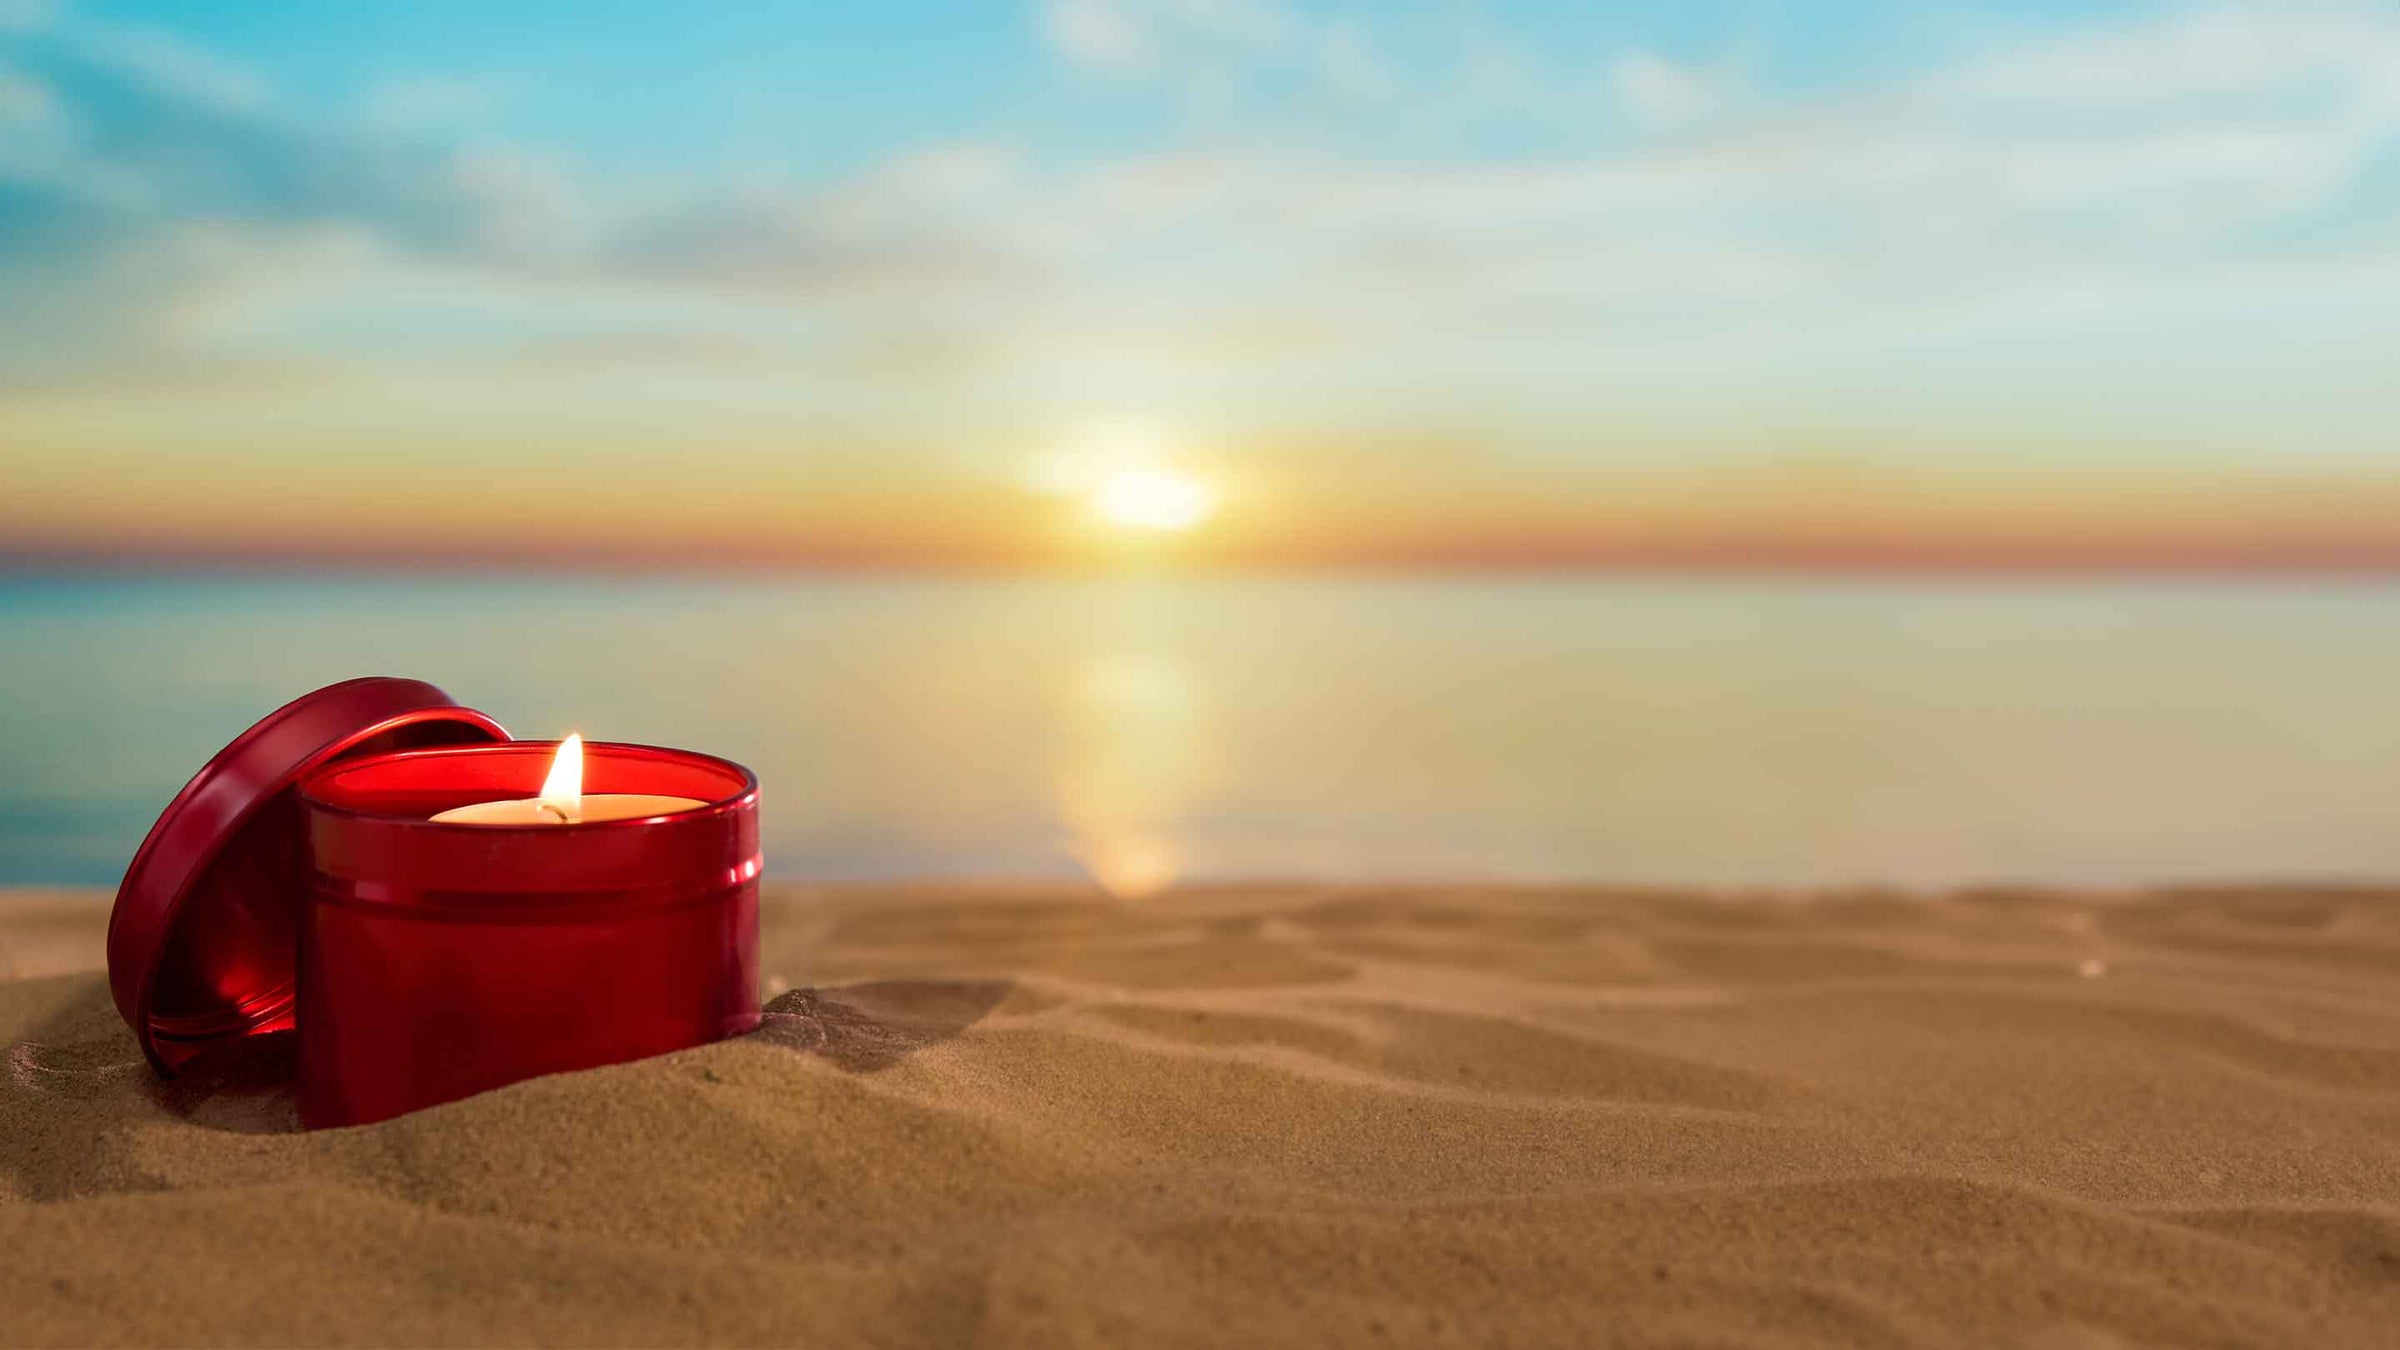 Confezione in latta di candela rossa sulla spiaggia